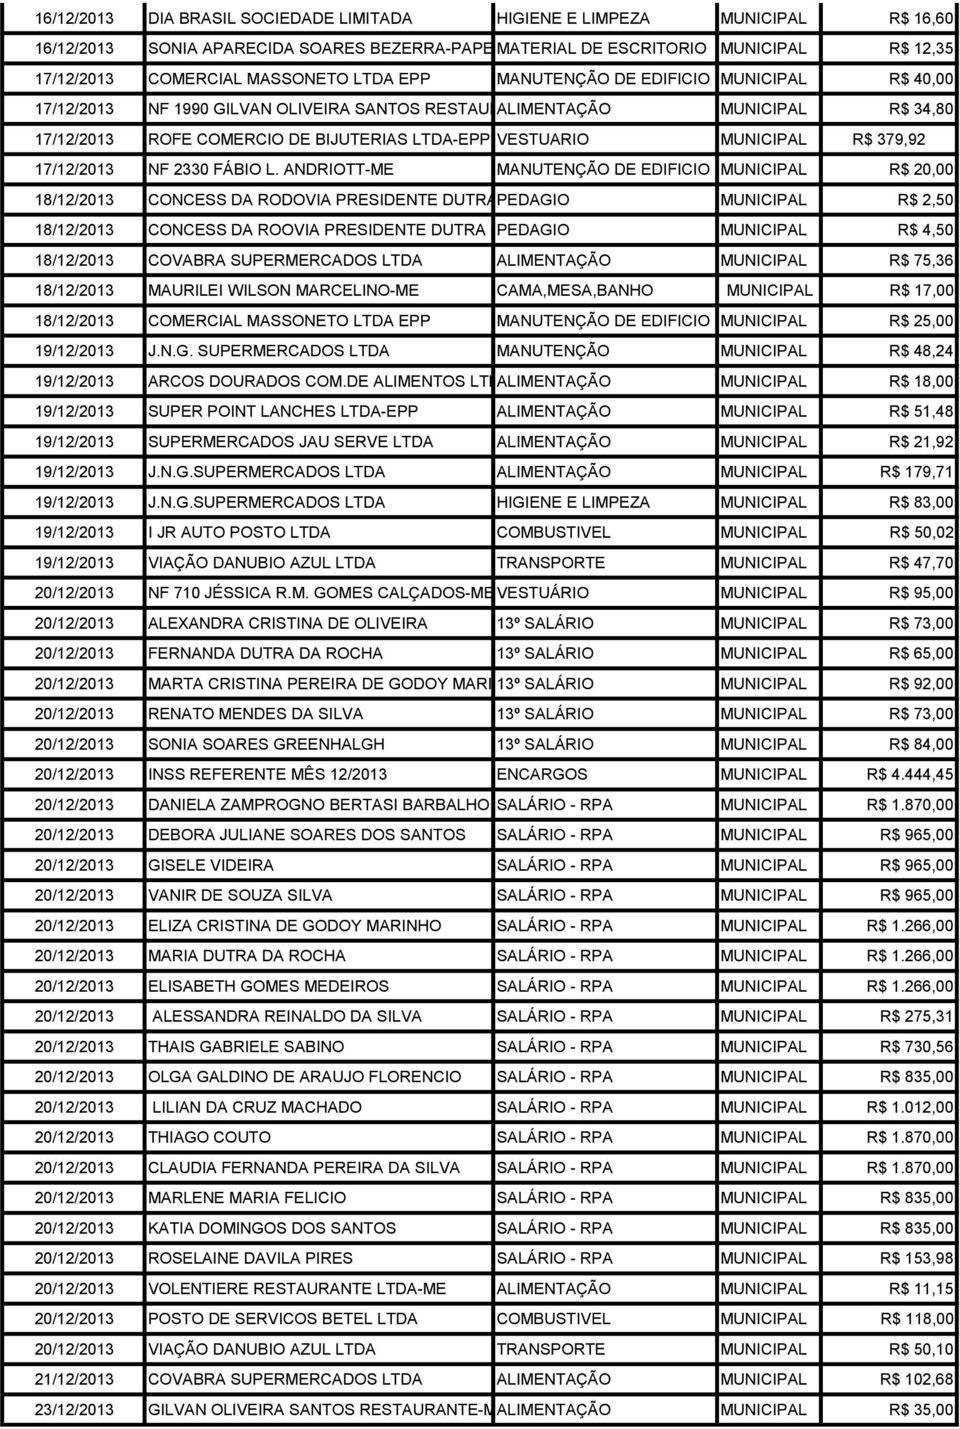 VESTUARIO MUNICIPAL R$ 379,92 17/12/2013 NF 2330 FÁBIO L.